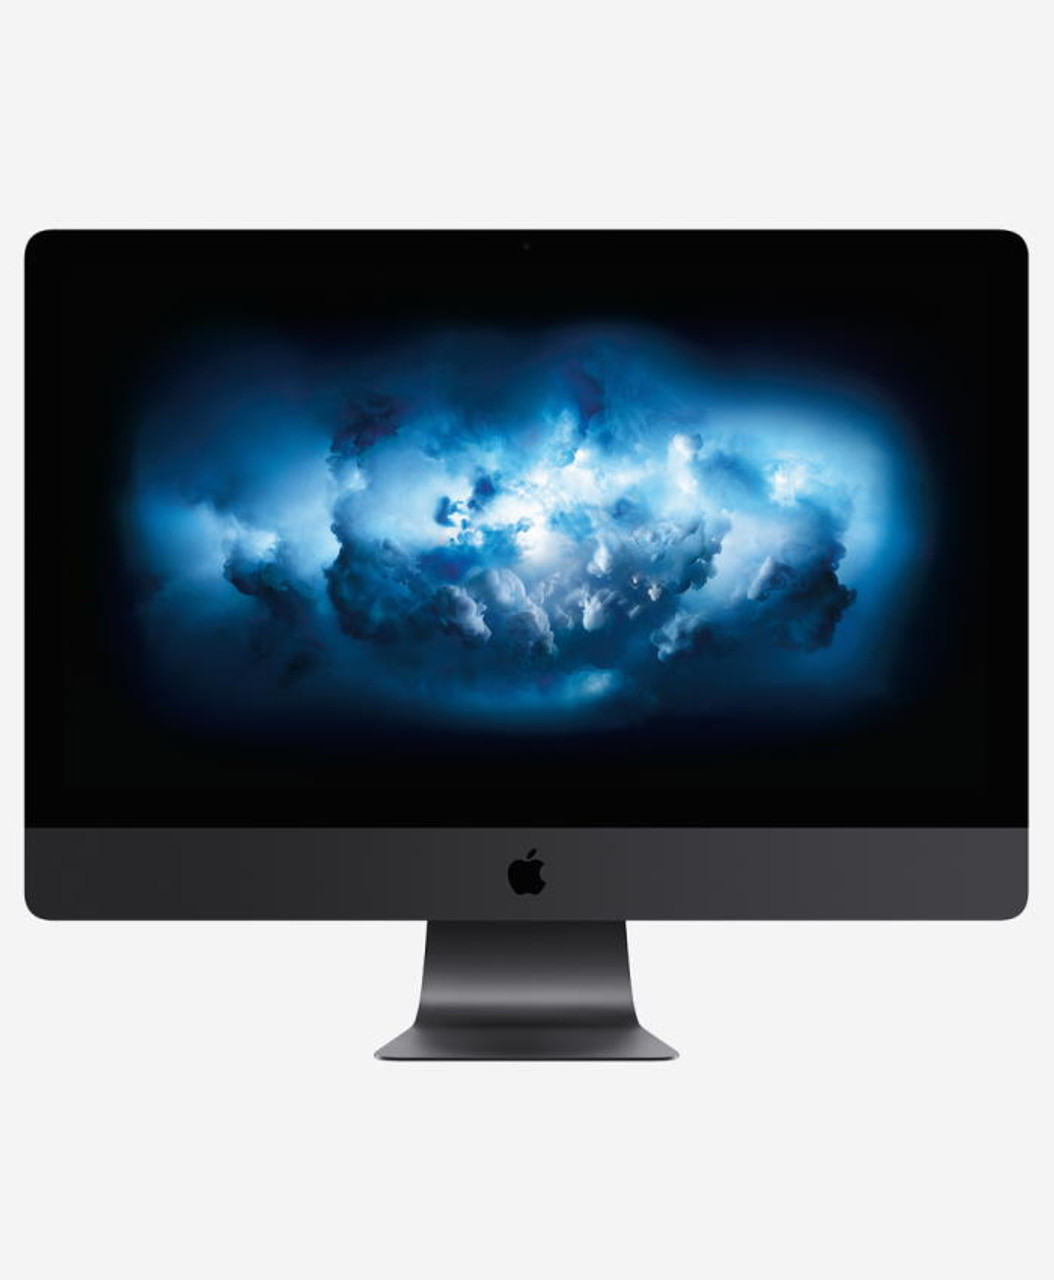 iMac 27 pouce Retina 5K 2017 Core i7 4.2GHz - 256Go SSD - 32Go Ram